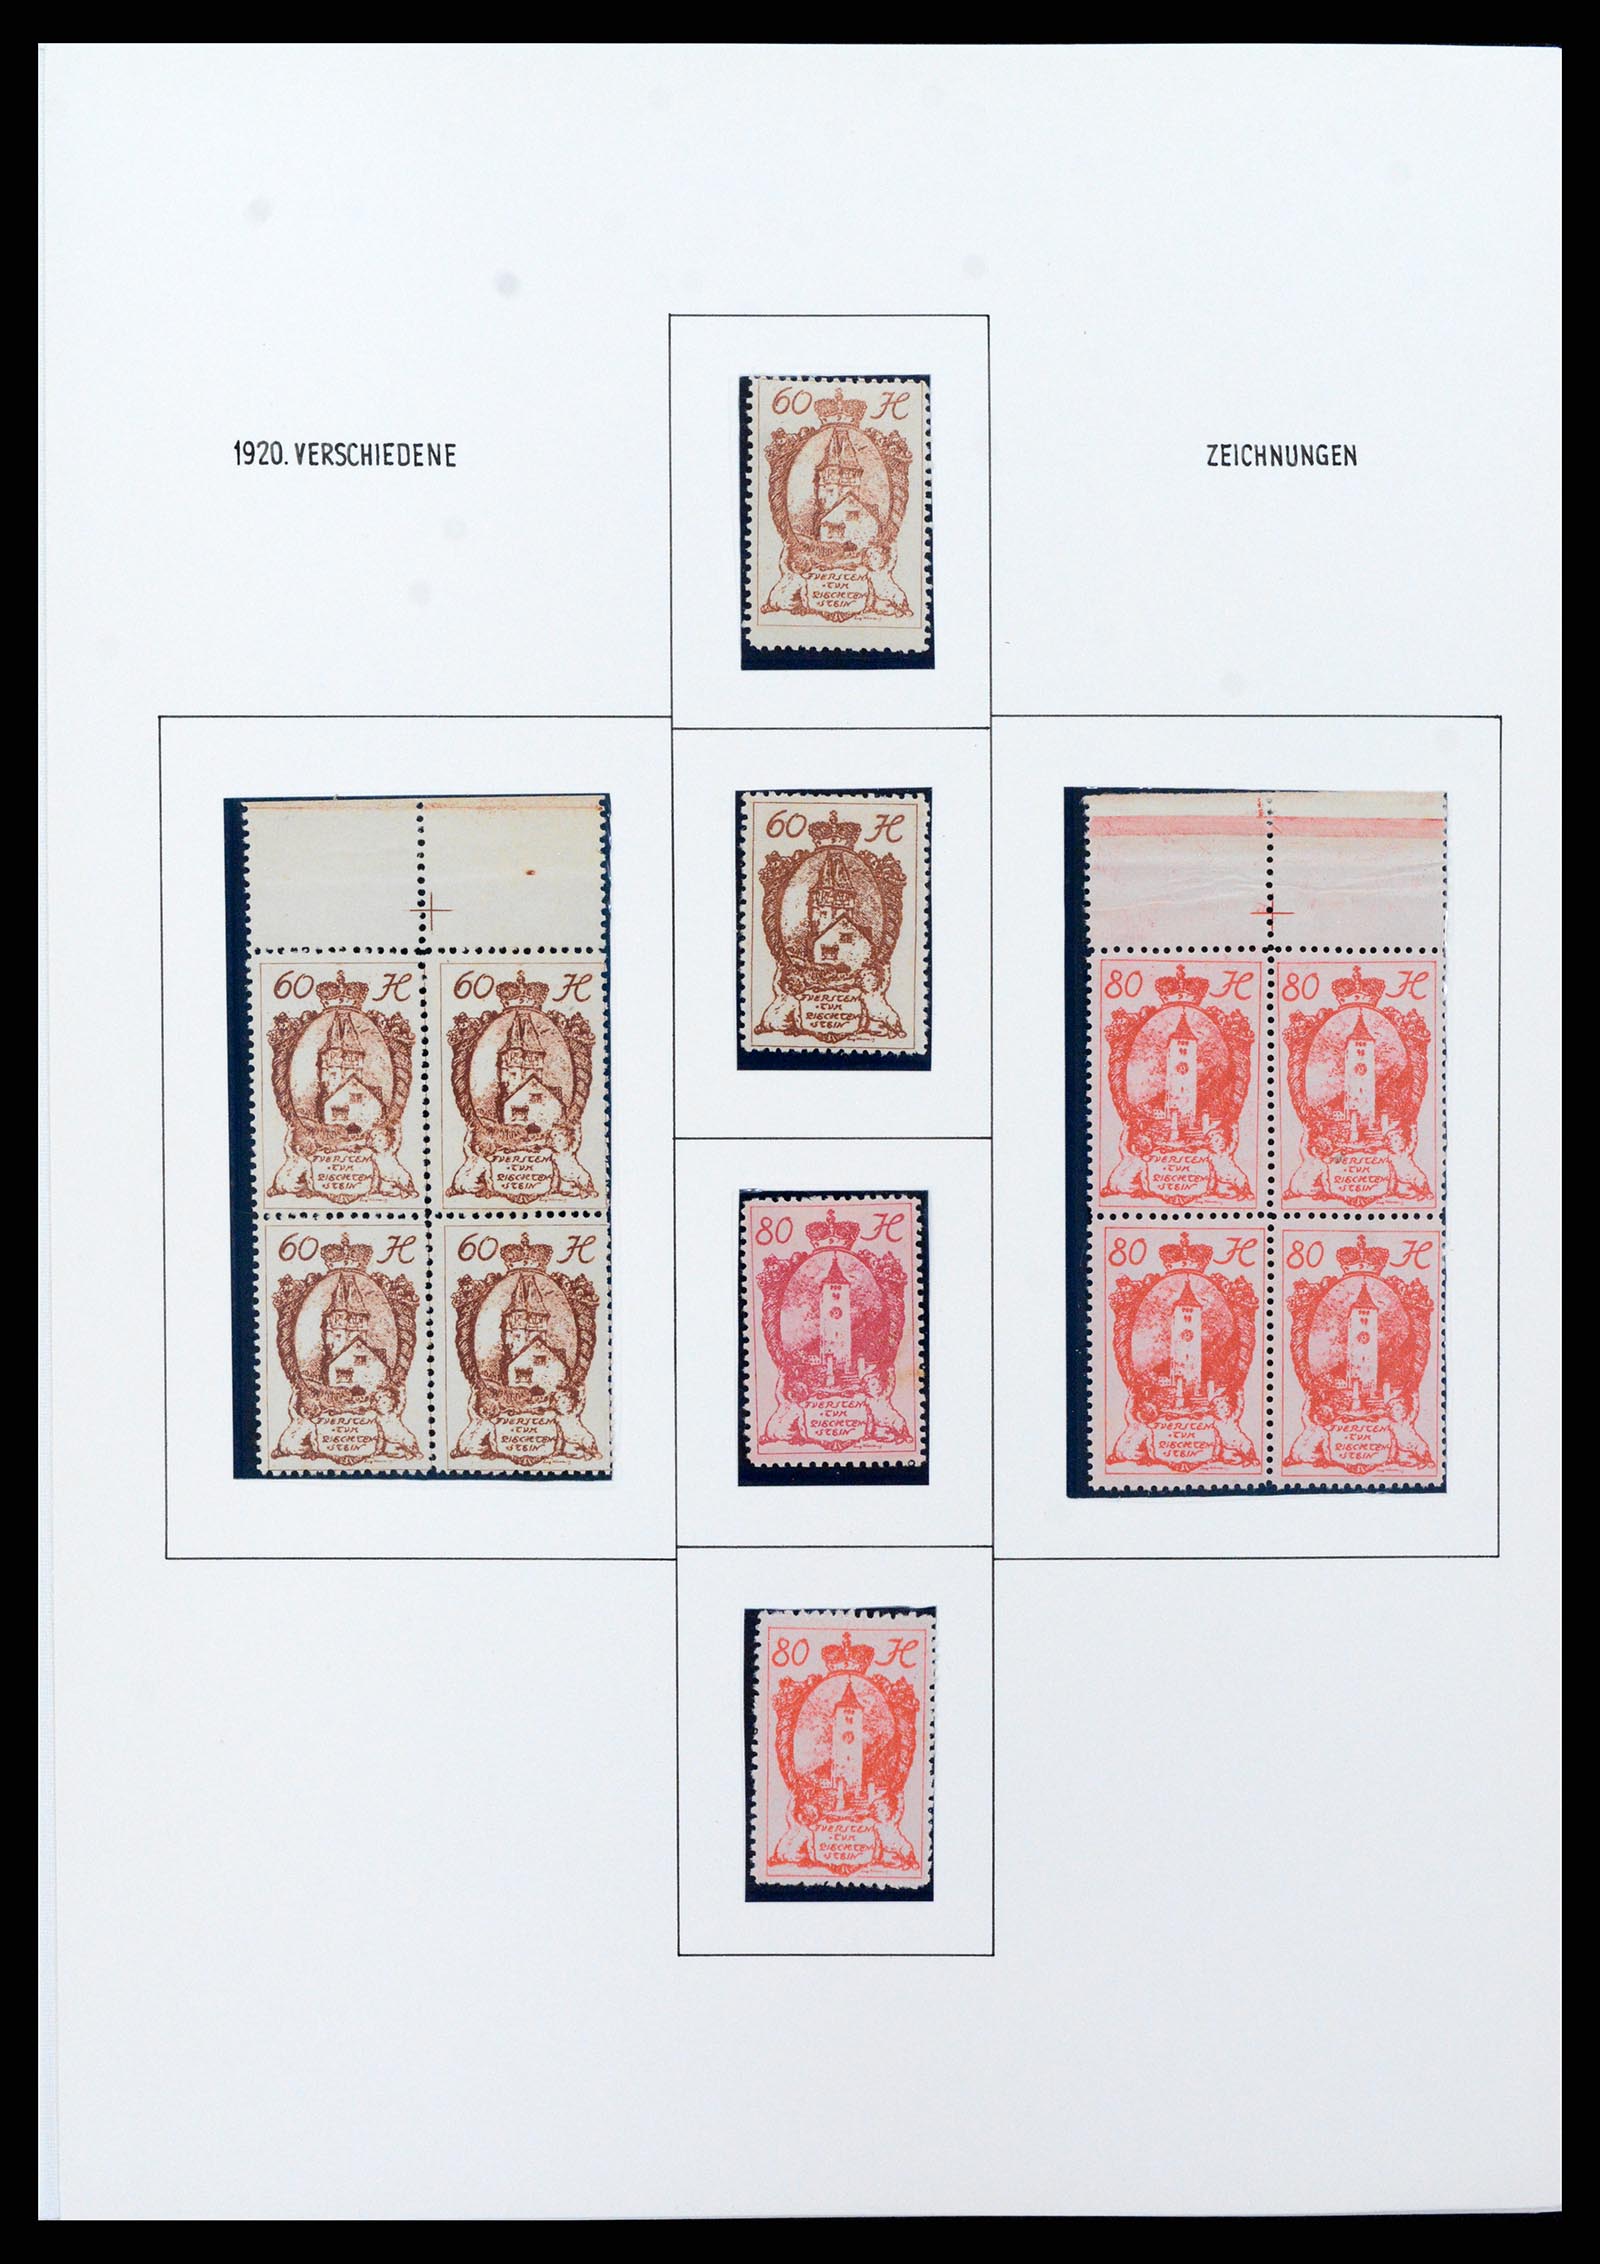 37150 0081 - Stamp collection 37150 Liechtenstein supercollection 1912-1962.